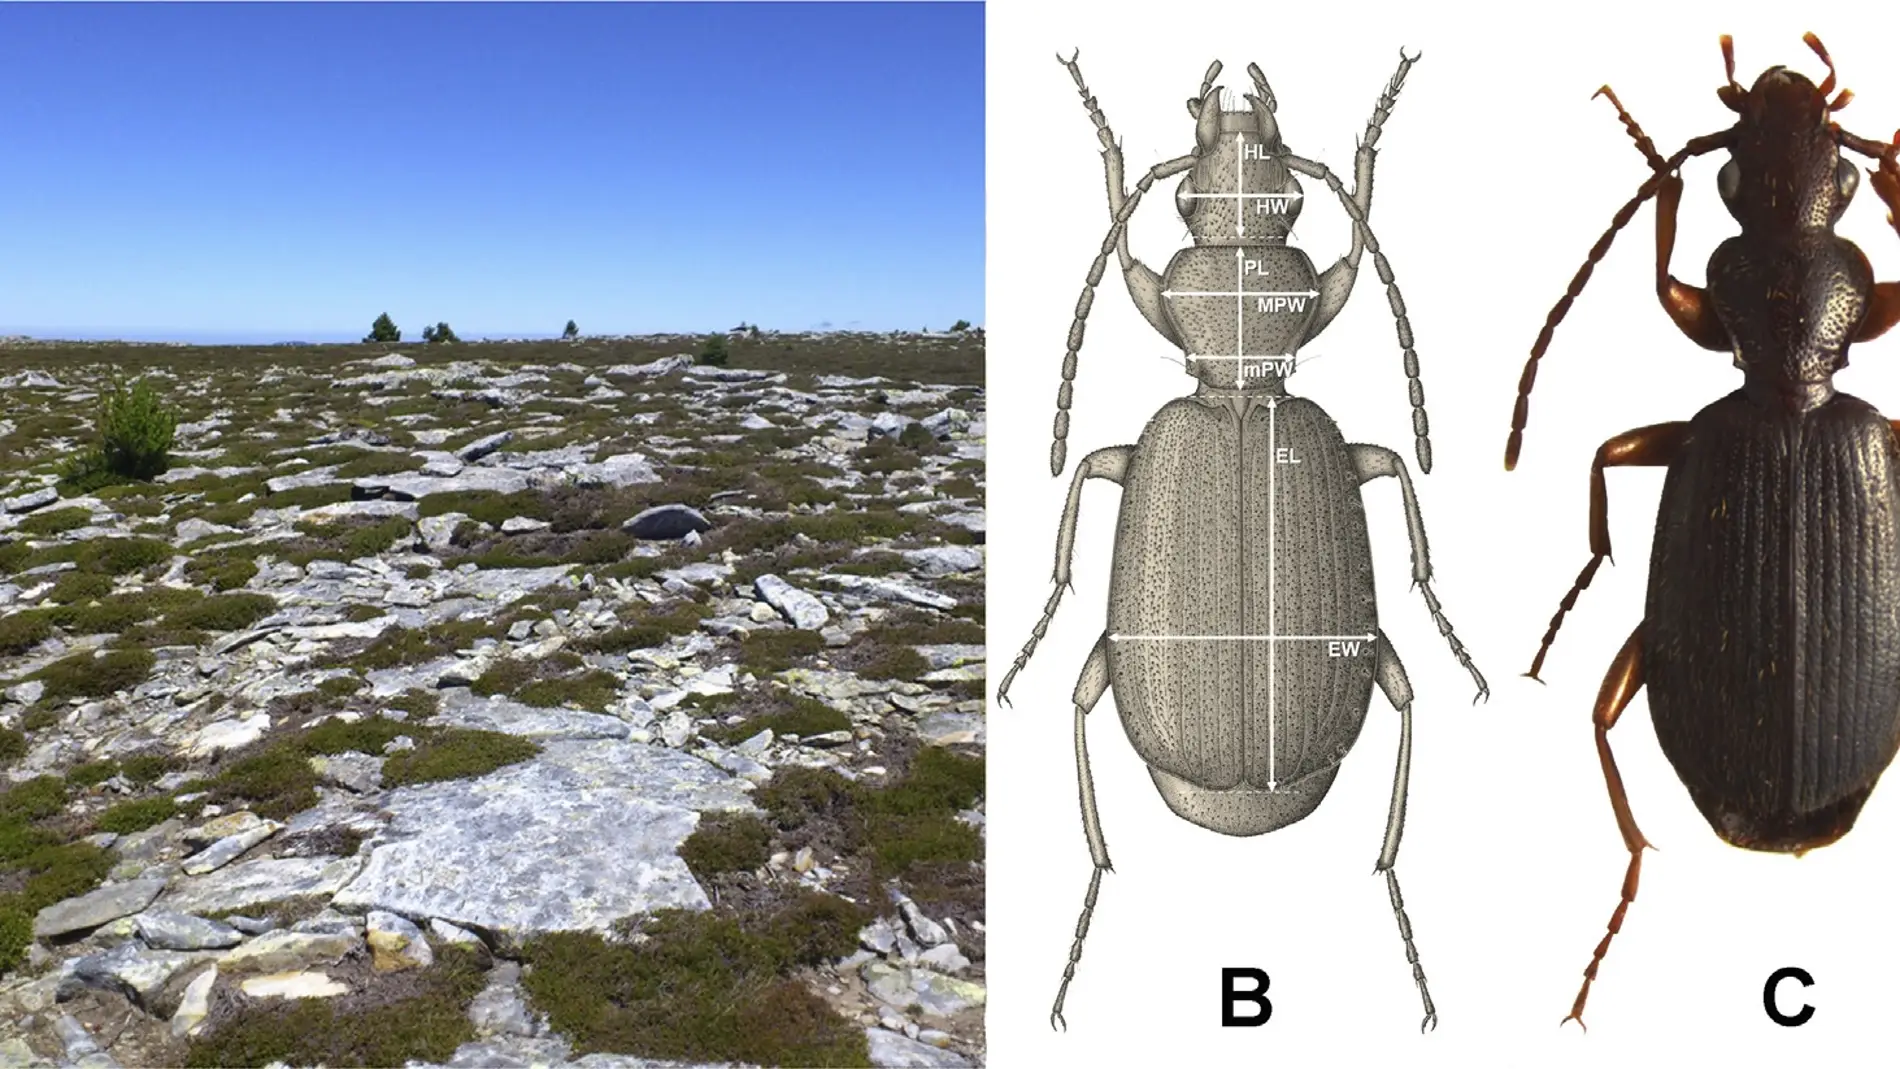 Descubierta una nueva especie de insecto en la alta montana del sistema iberico